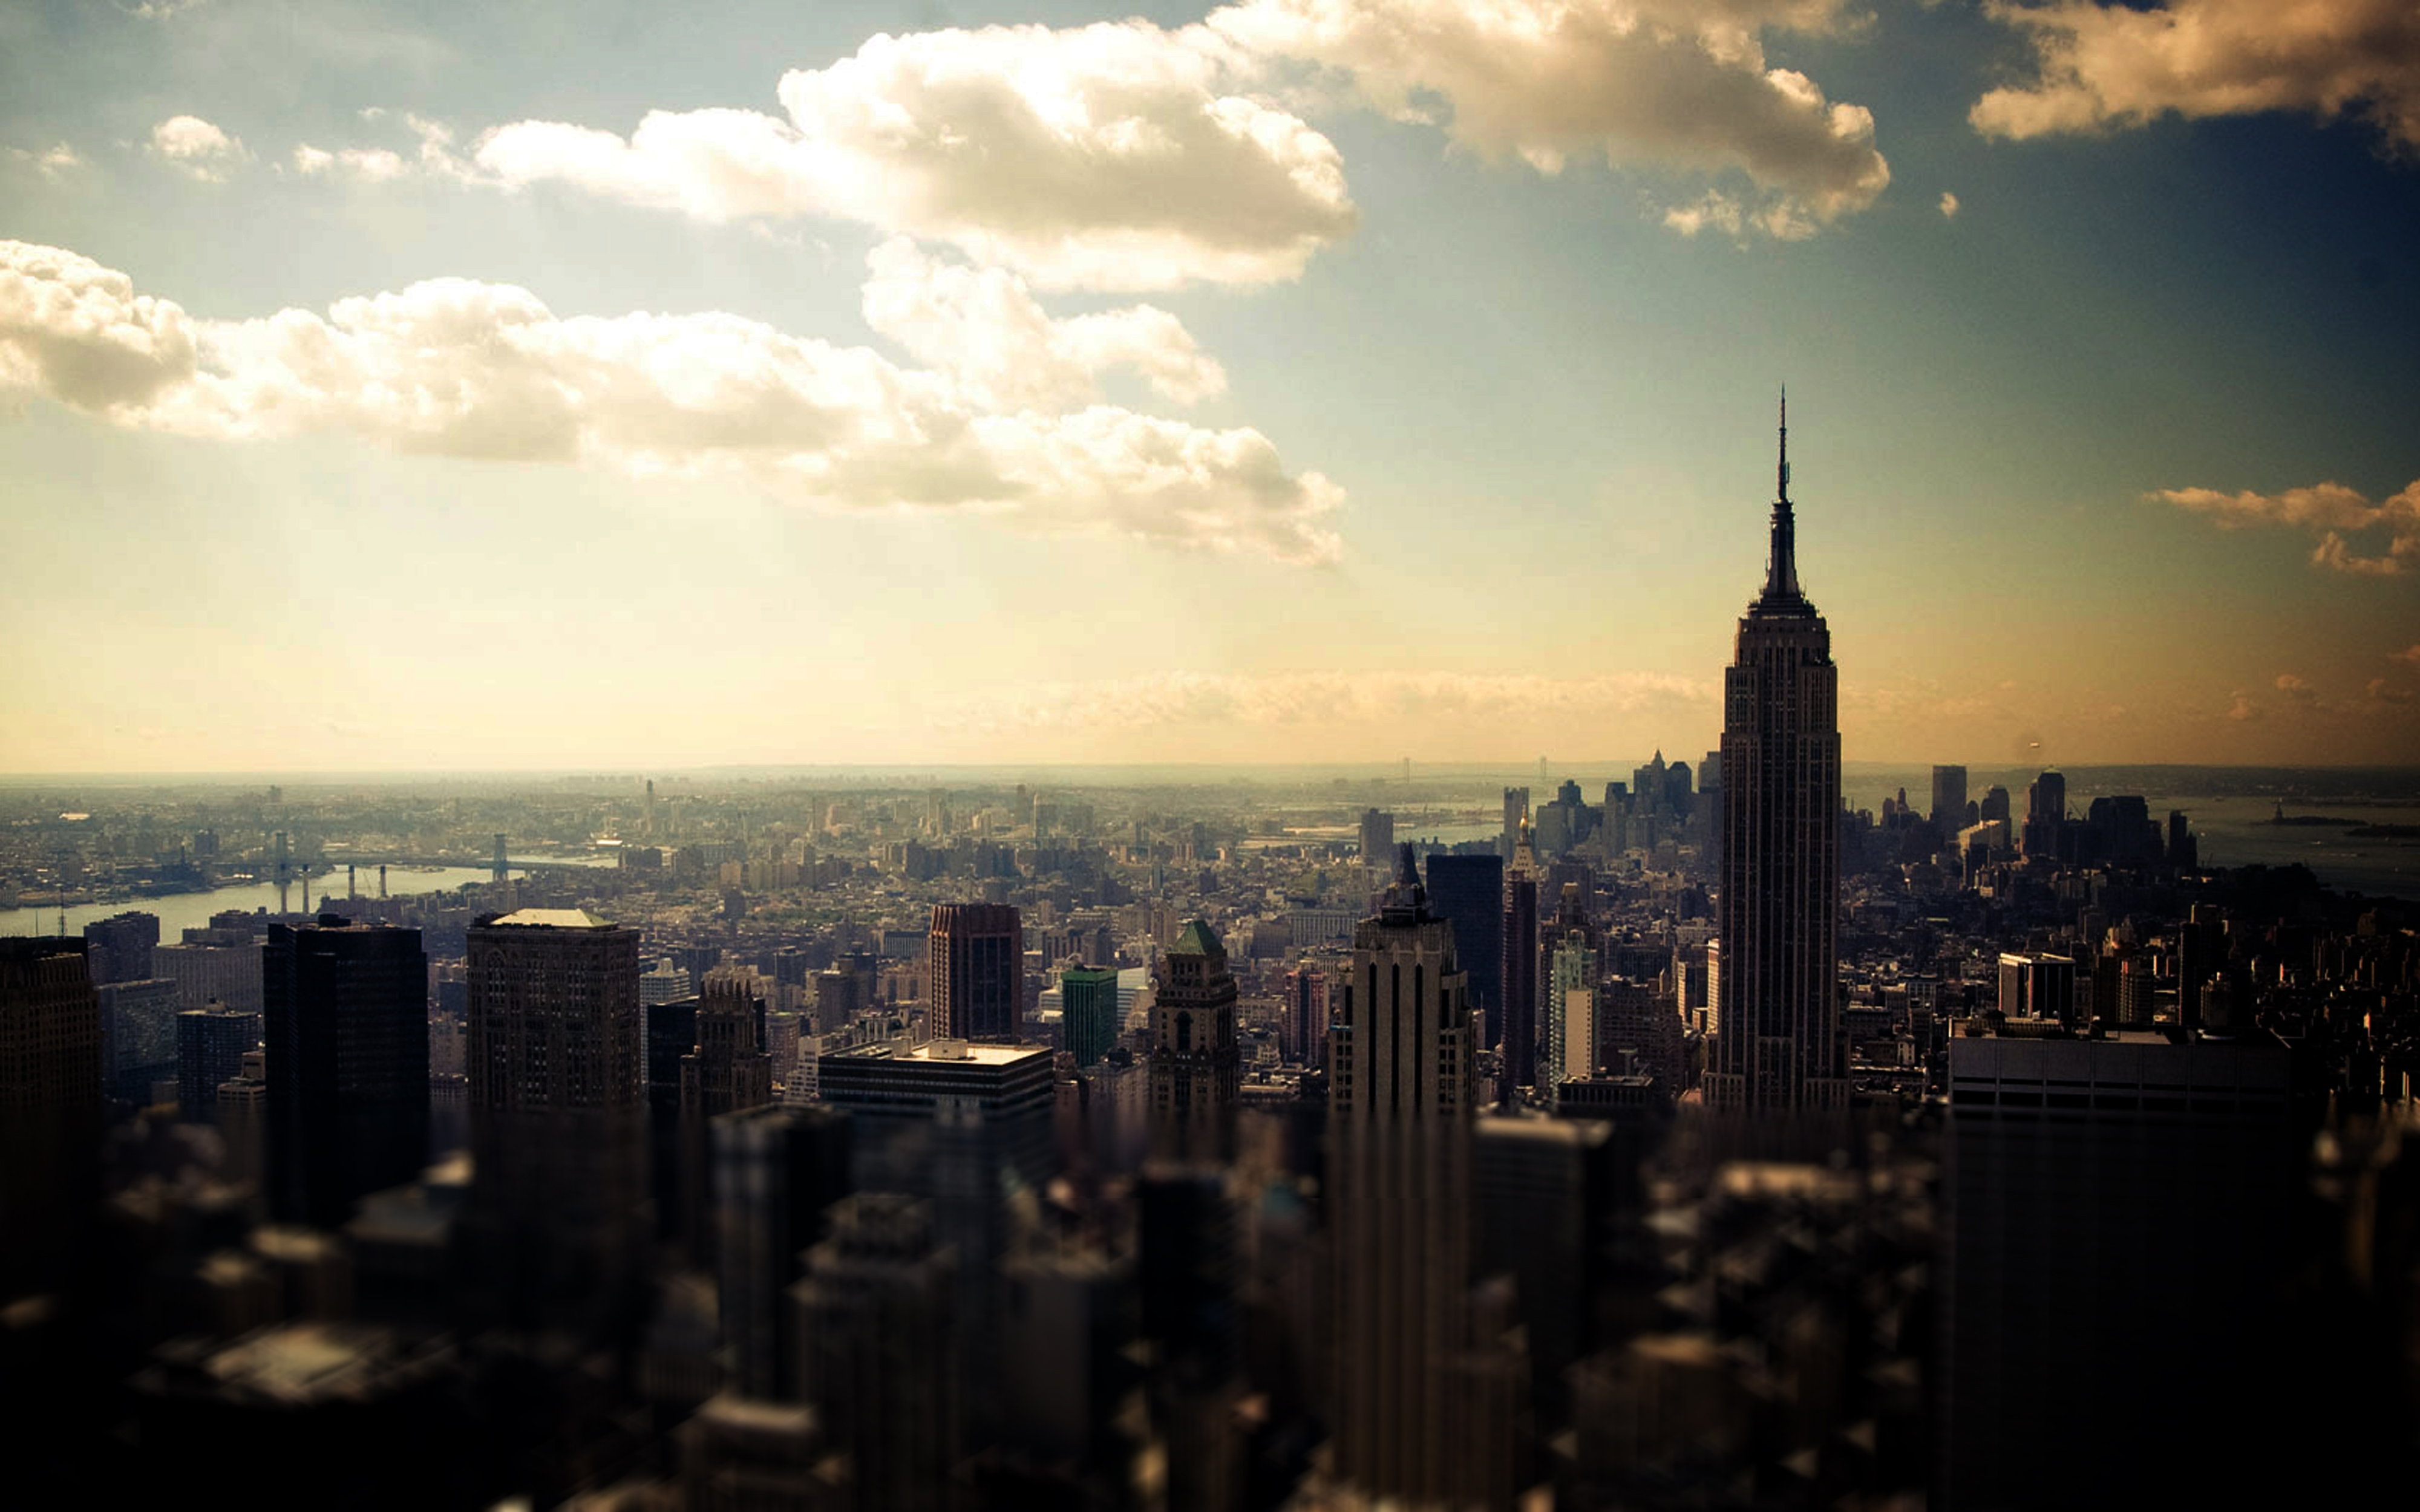 ニューヨークtumblr壁紙,都市の景観,首都圏,市,市街地,超高層ビル